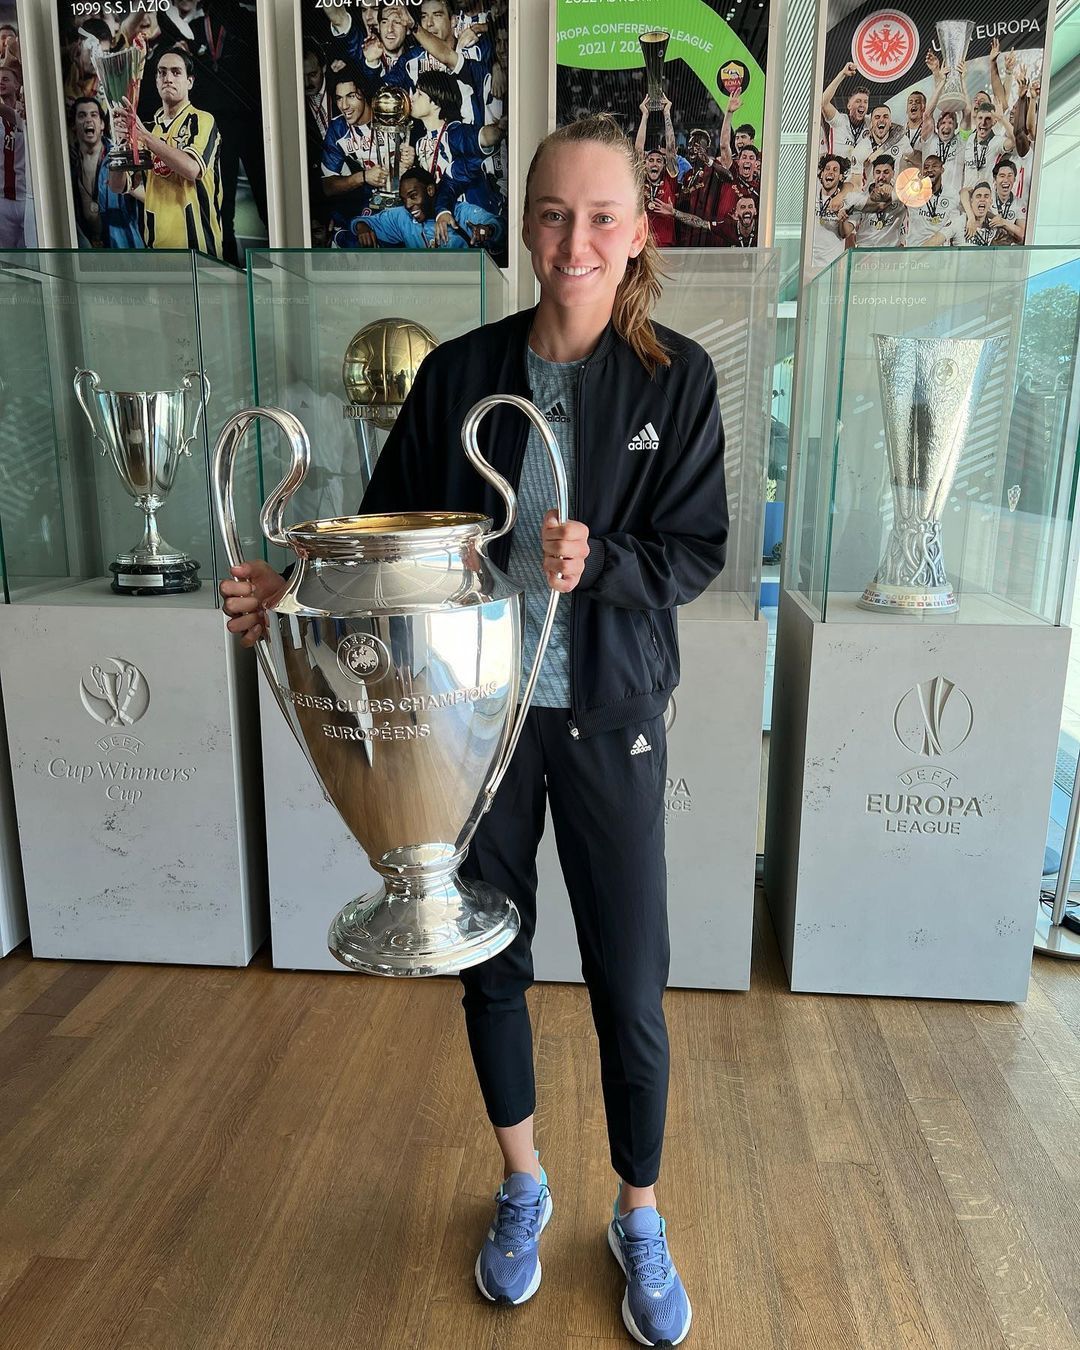 Чемпионка Уимблдона Елена Рыбакина выложила фото с Кубком чемпионов и  обратилась к УЕФА - Чемпионат